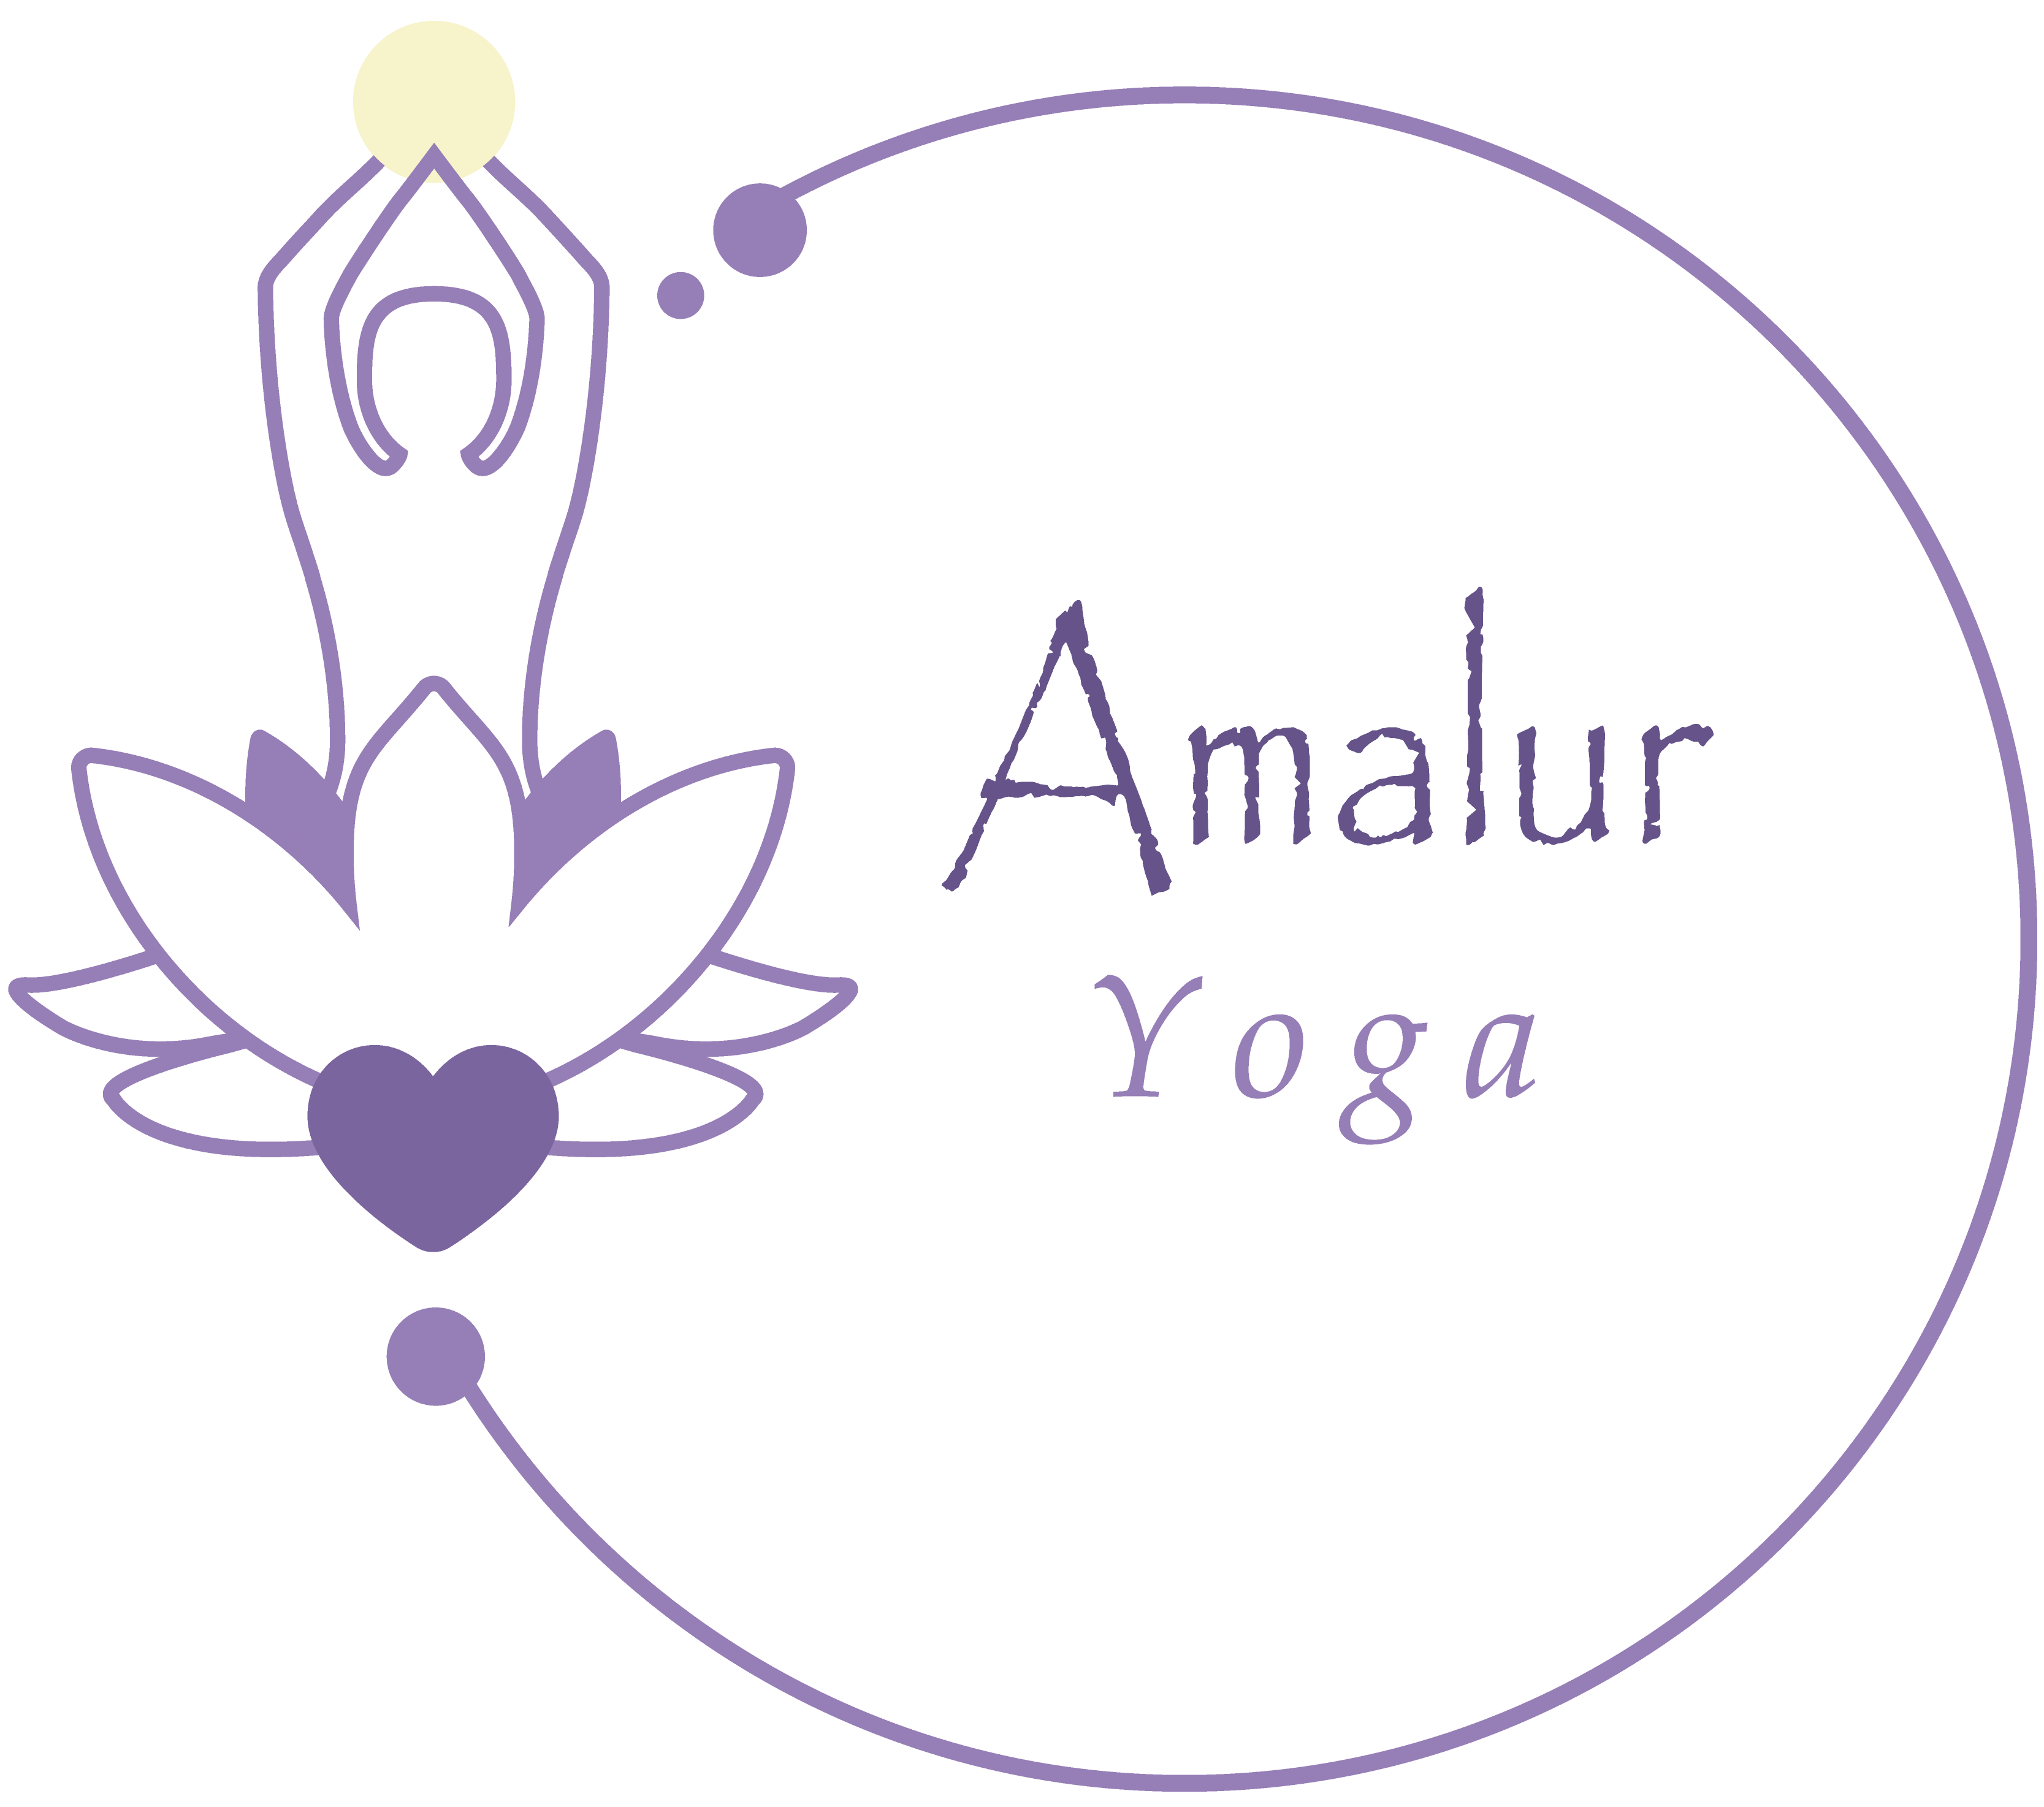 Amalur Yoga